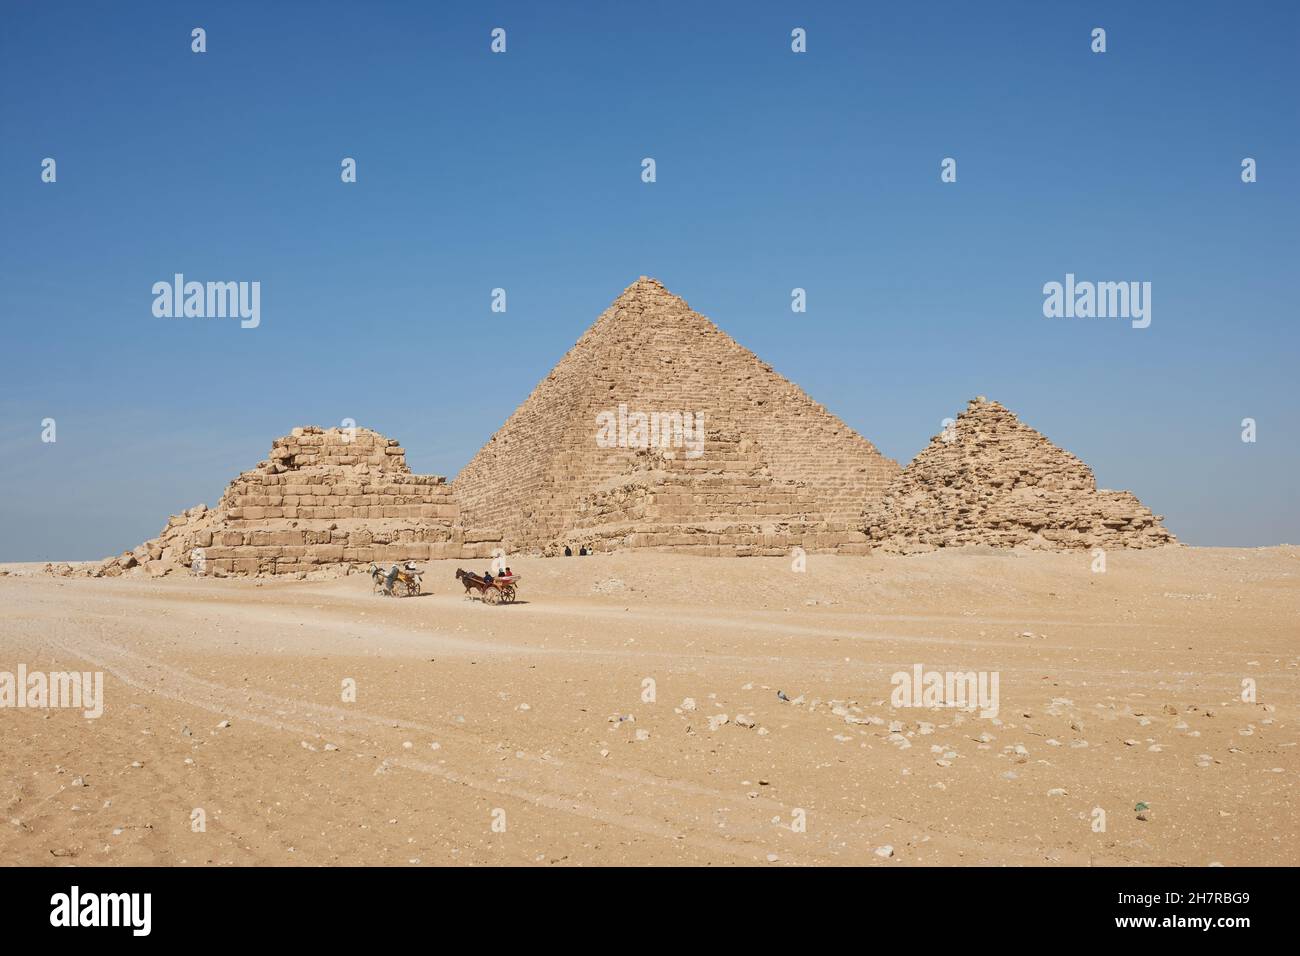 Carros tirados por caballos cerca de las pirámides de Giza. Menkaure y las reinas pirámides se ven desde el desierto Foto de stock